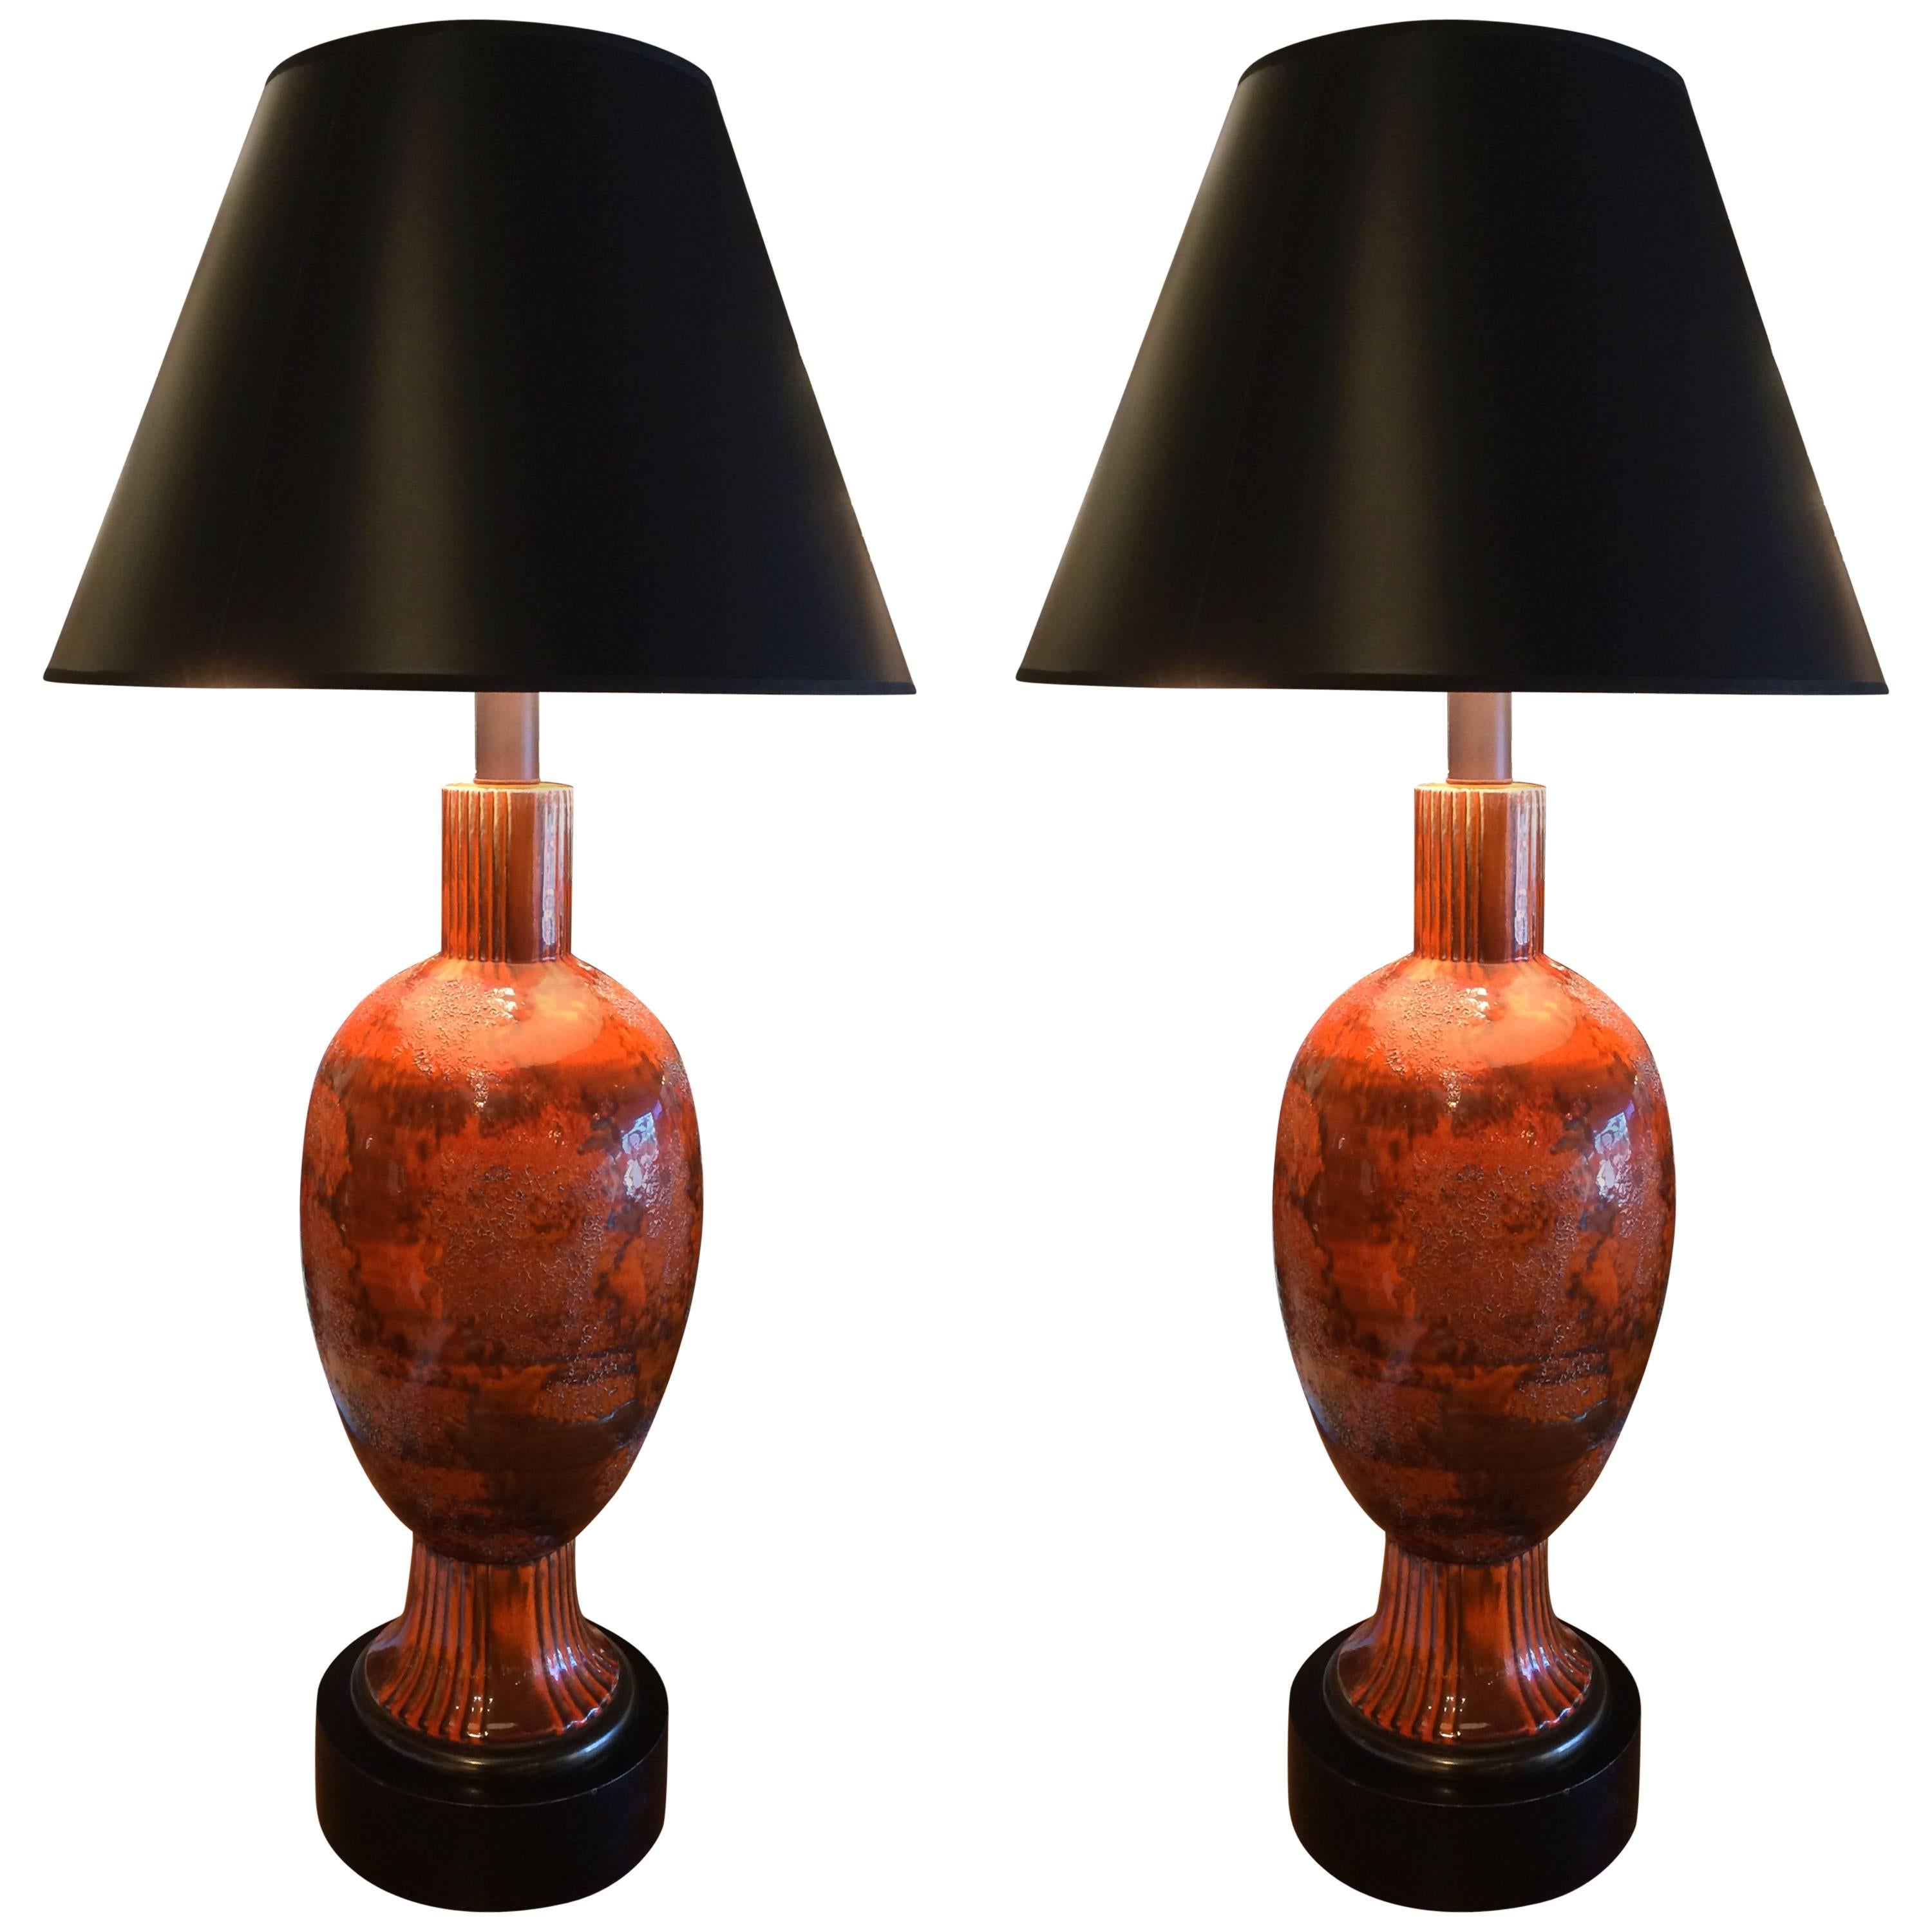 Pair of Large Scale Italian Mid Century Ceramic Lamps